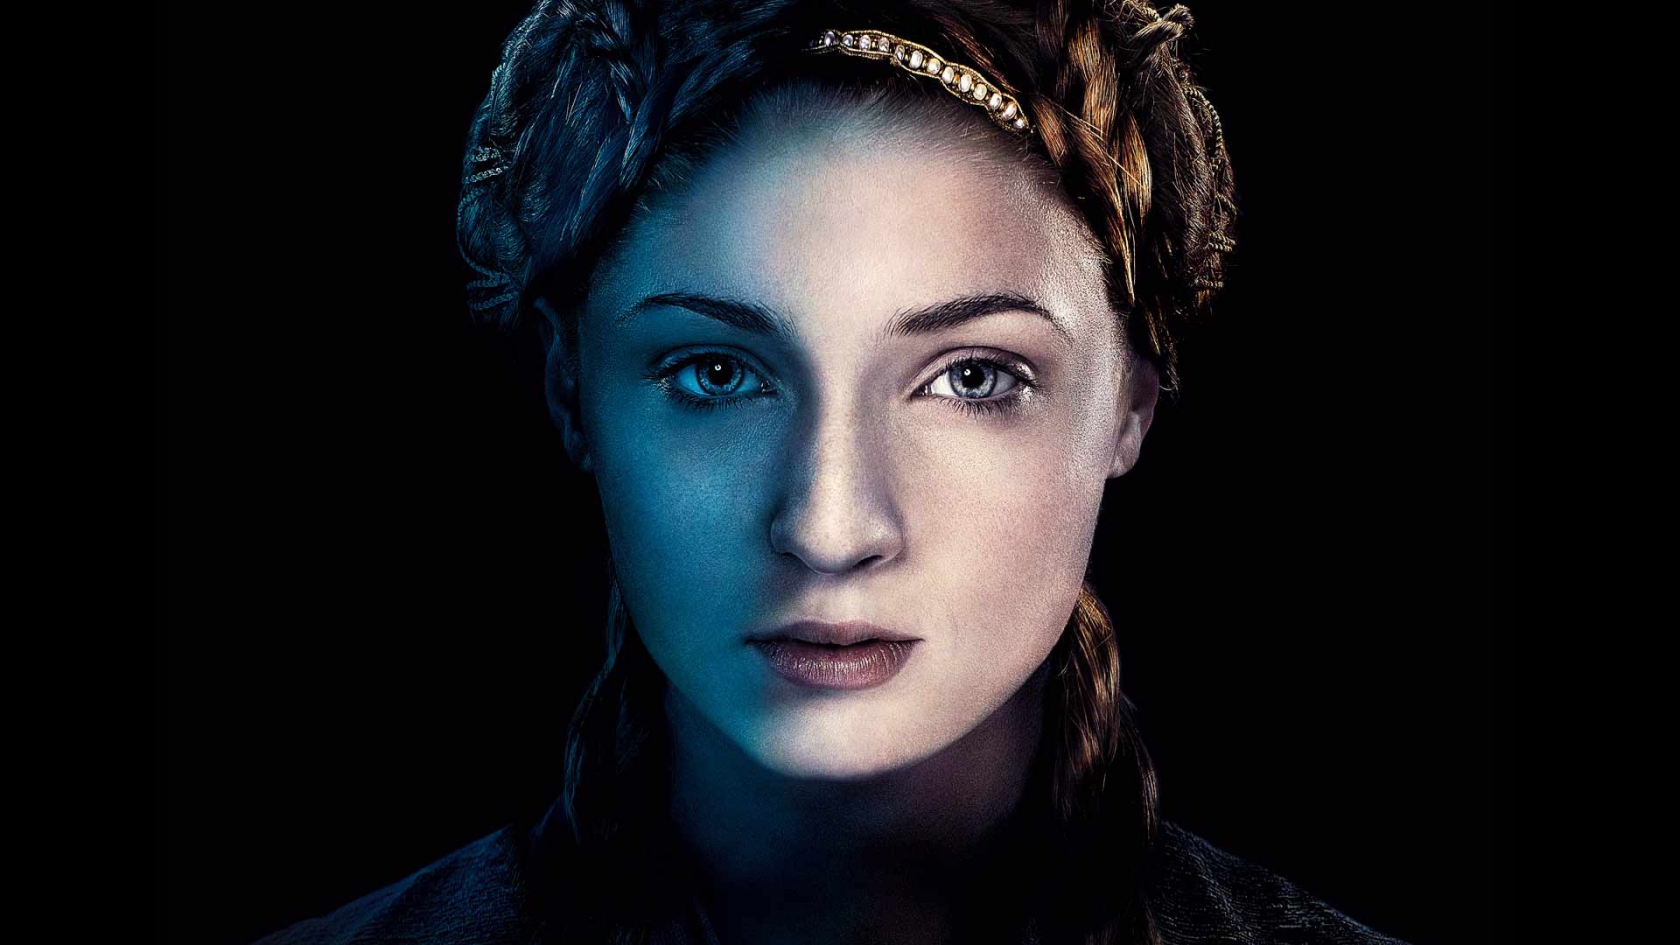 Sansa Stark Game of Thrones for 1680 x 945 HDTV resolution